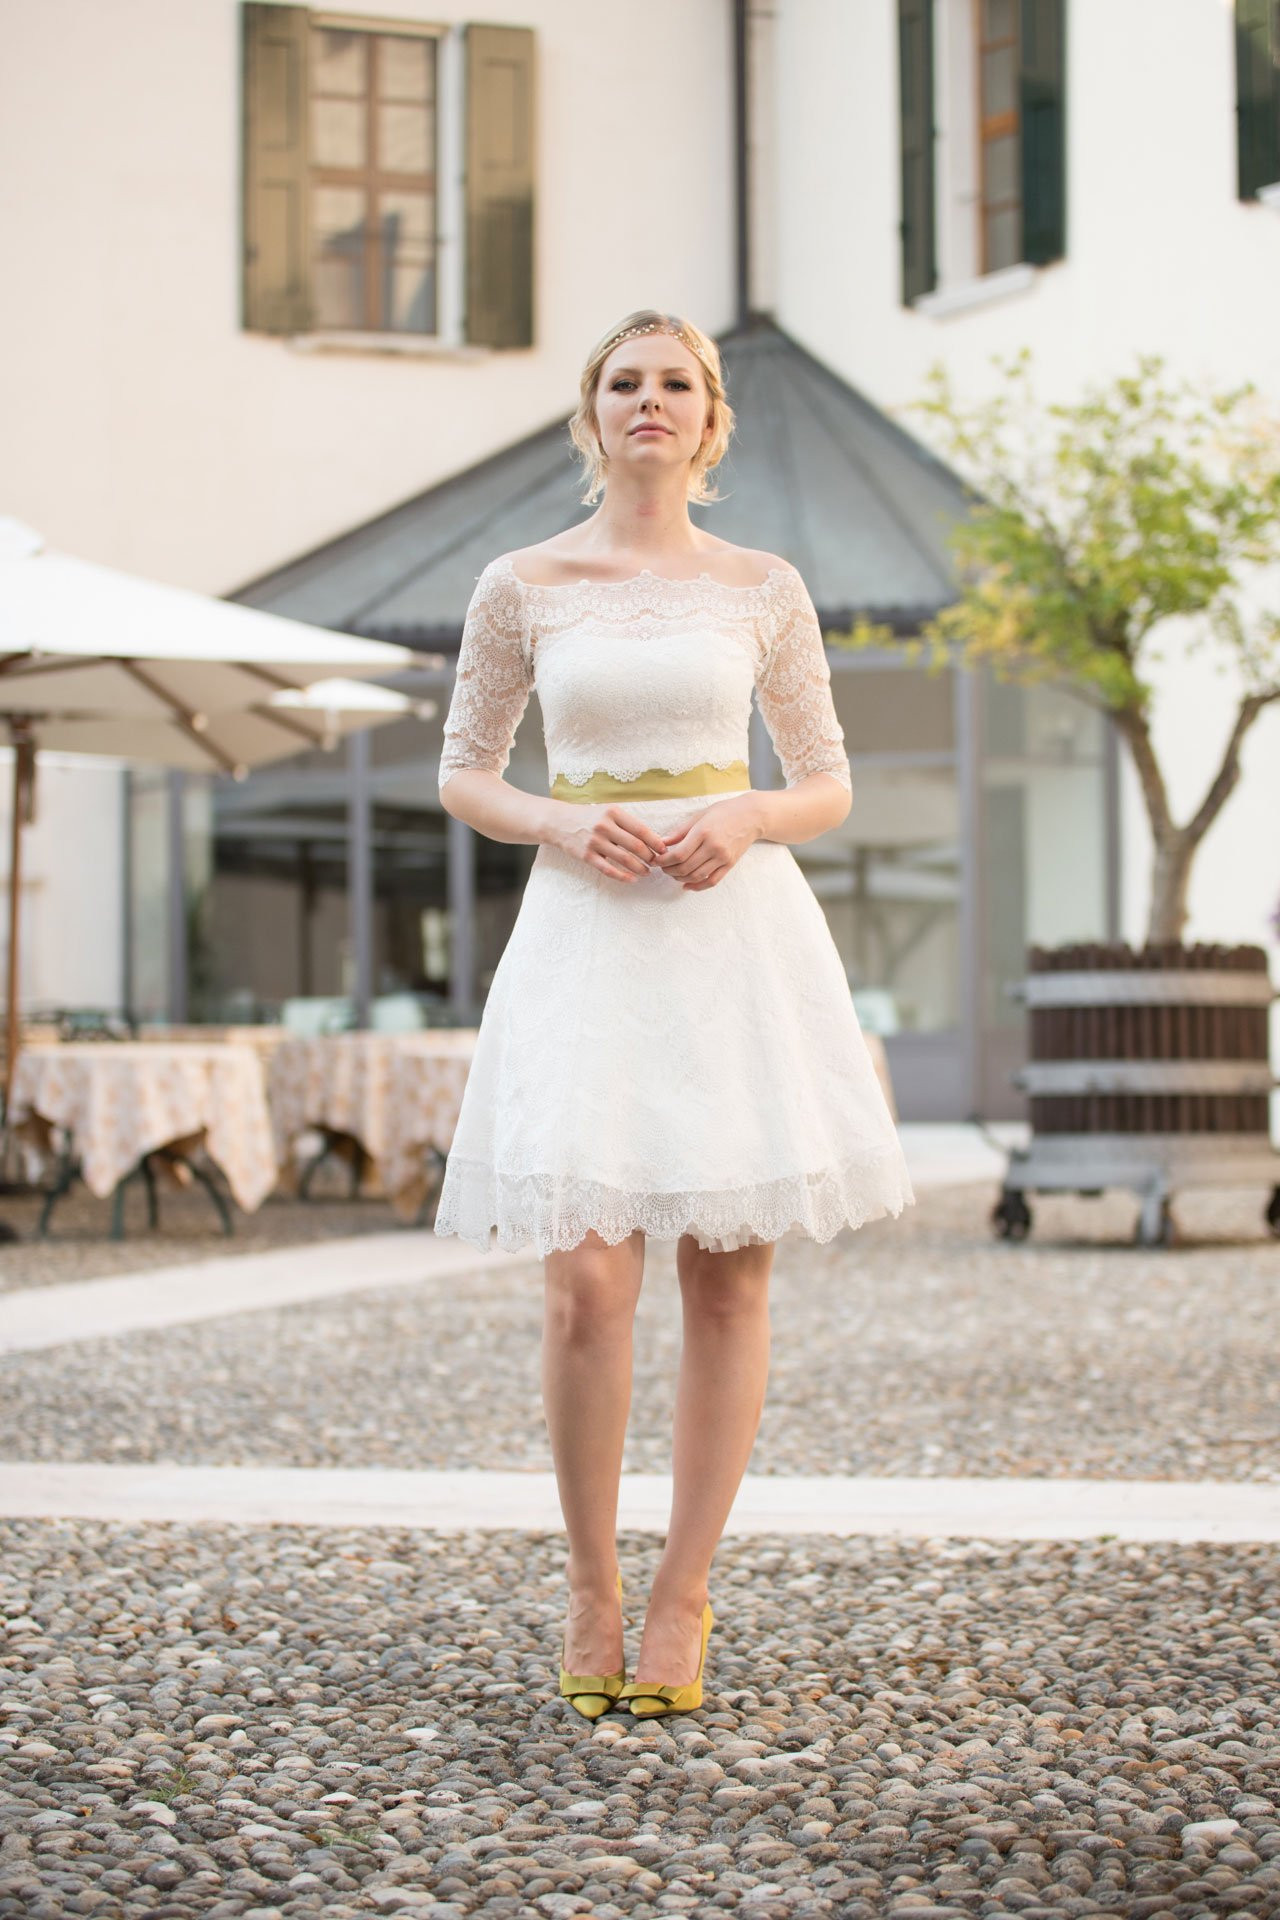 Brautkleid Kurz Standesamt
 Brautkleid Petticoat kurzes Spitzenkleid im 50er Jahre Stil